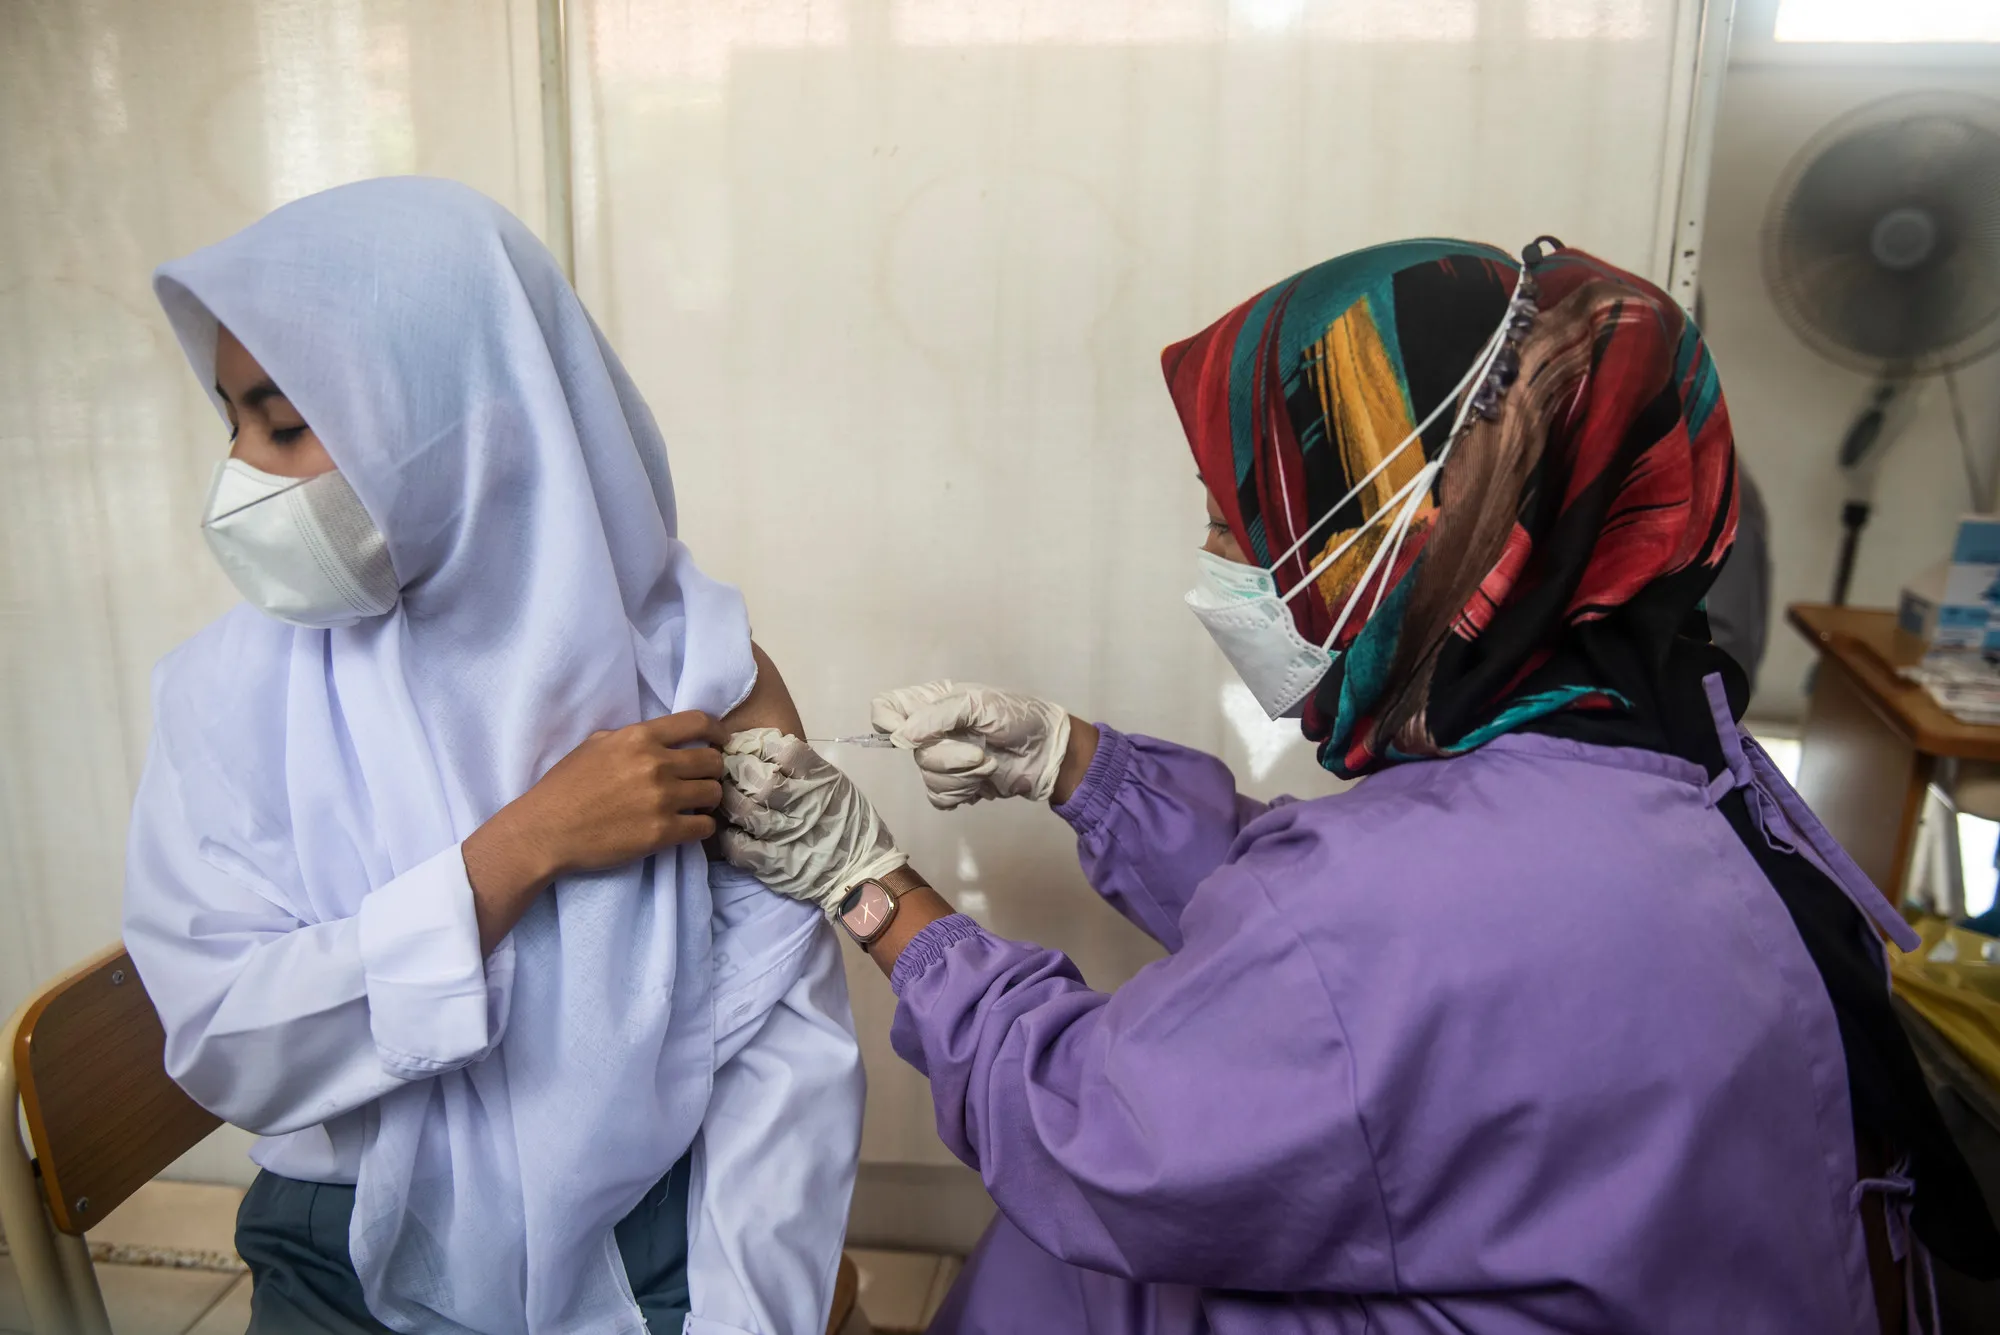 Un trabajador de la salud inyecta la vacuna a los estudiantes durante el programa de vacunación en la escuela secundaria pública Cinangka, Serang, Banten, Indonesia, el lunes 9 de agosto de 2021. Los estudiantes deben traer una carta de permiso de sus padres para vacunarse.